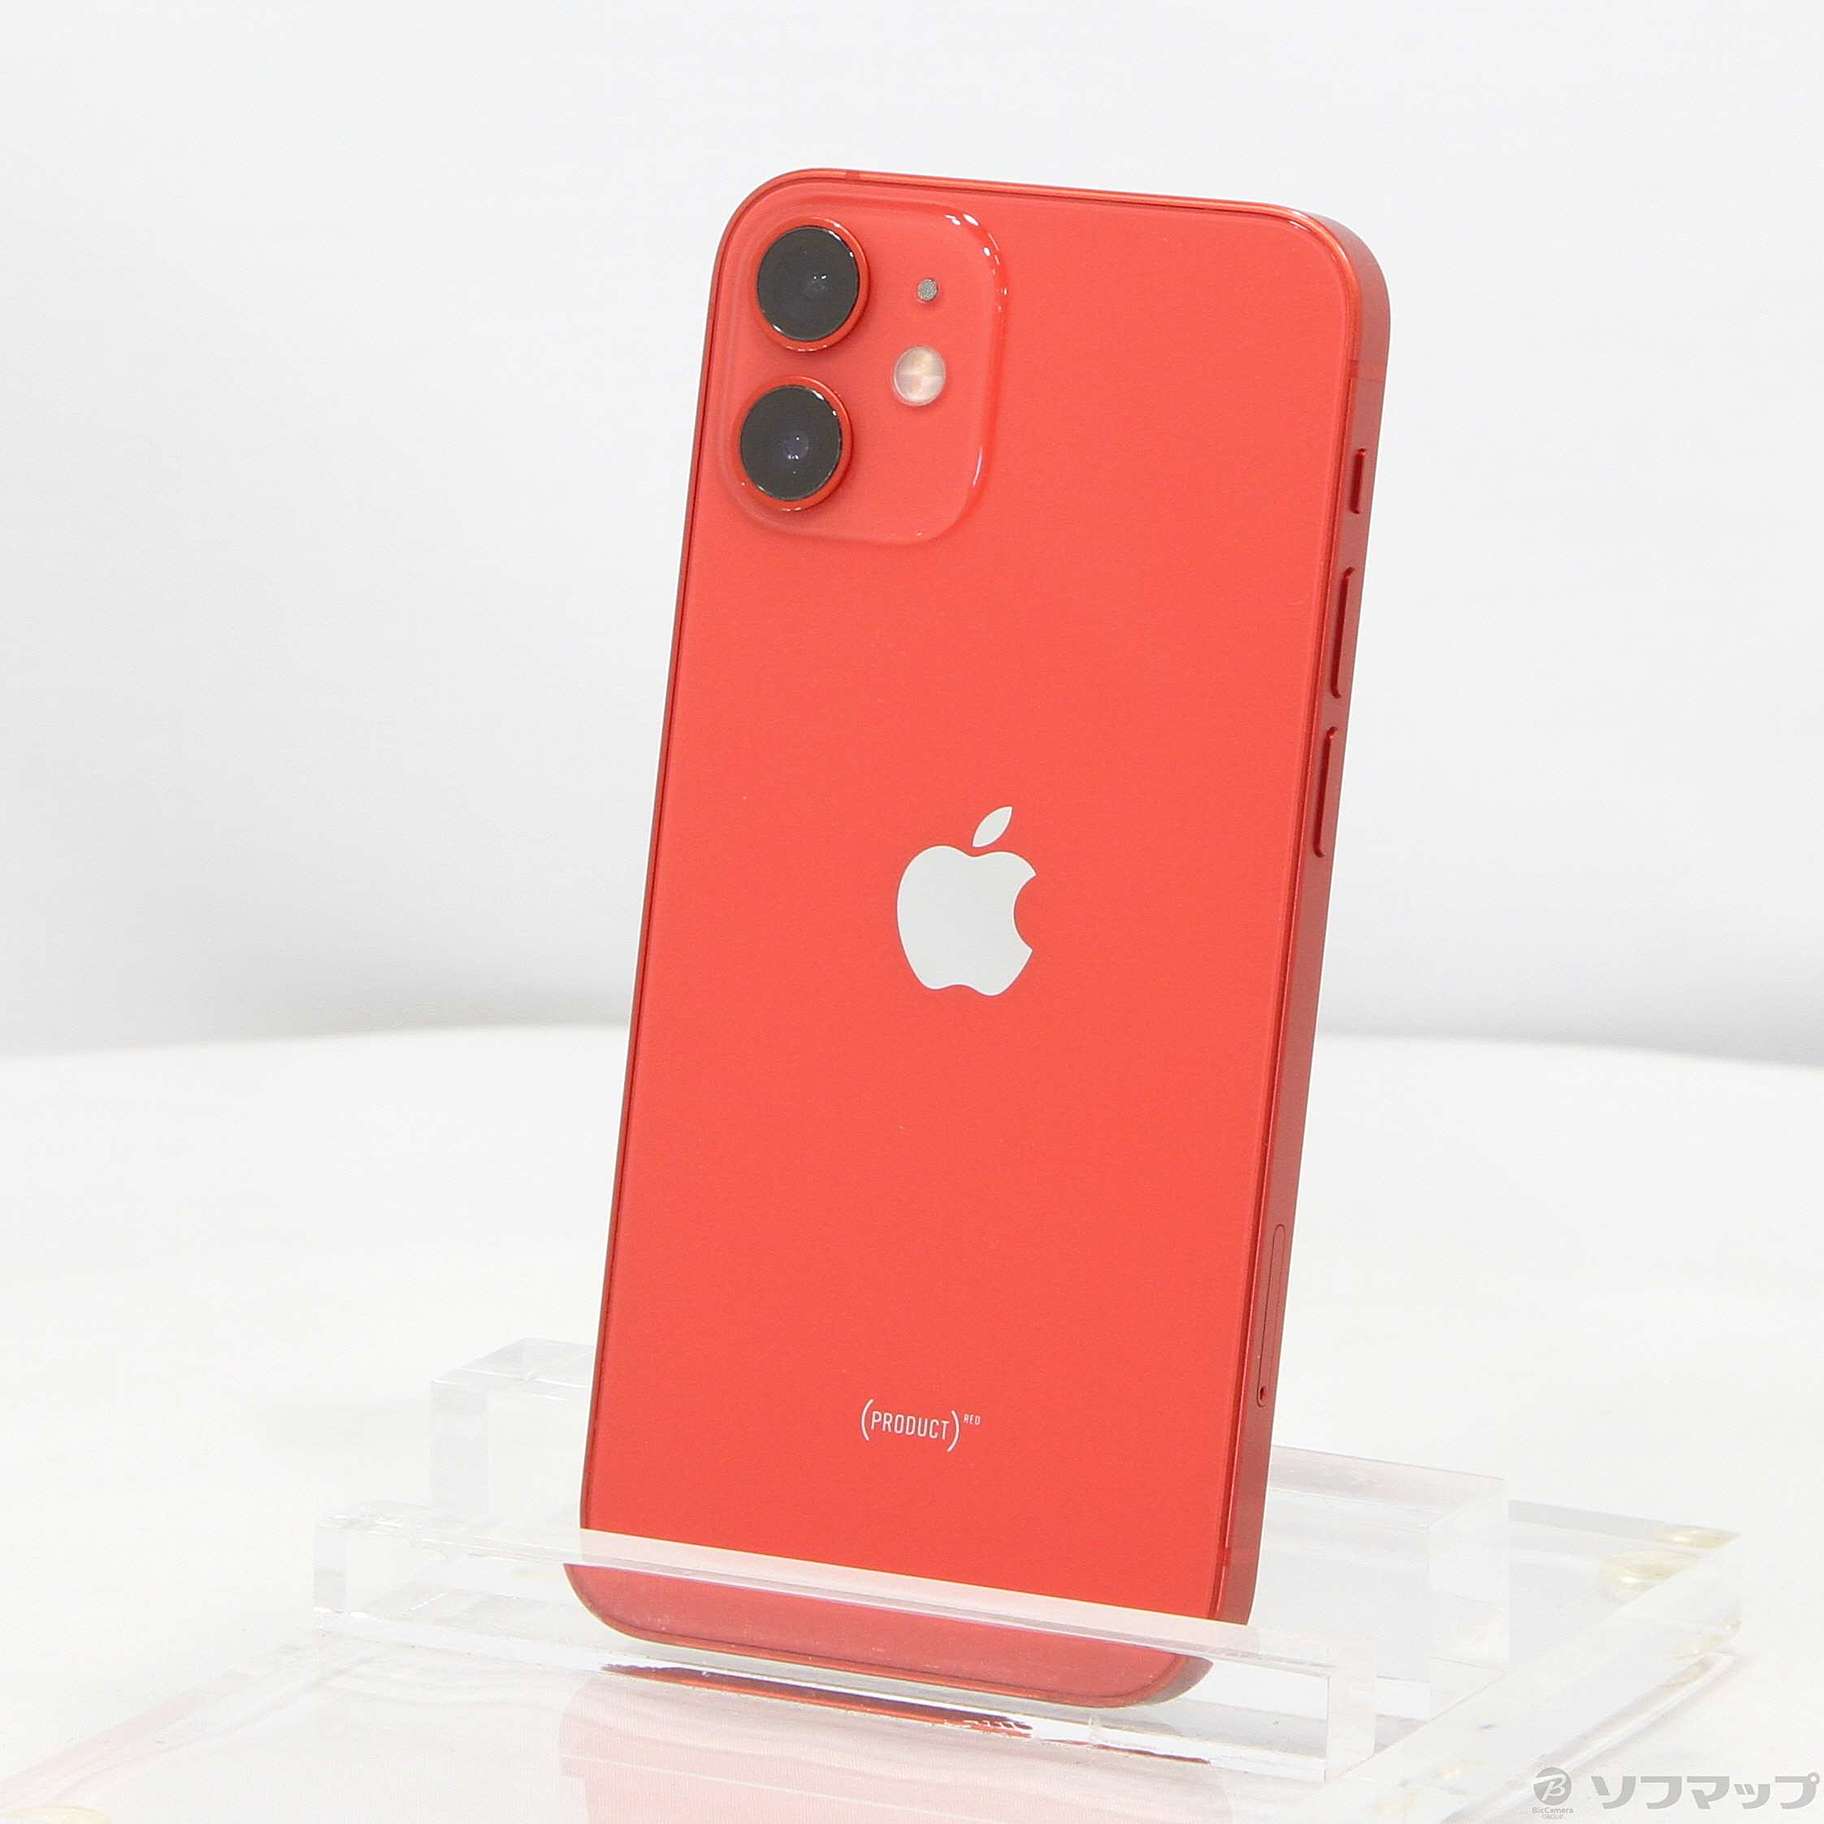 iPhone12 mini 128GB red レッド-